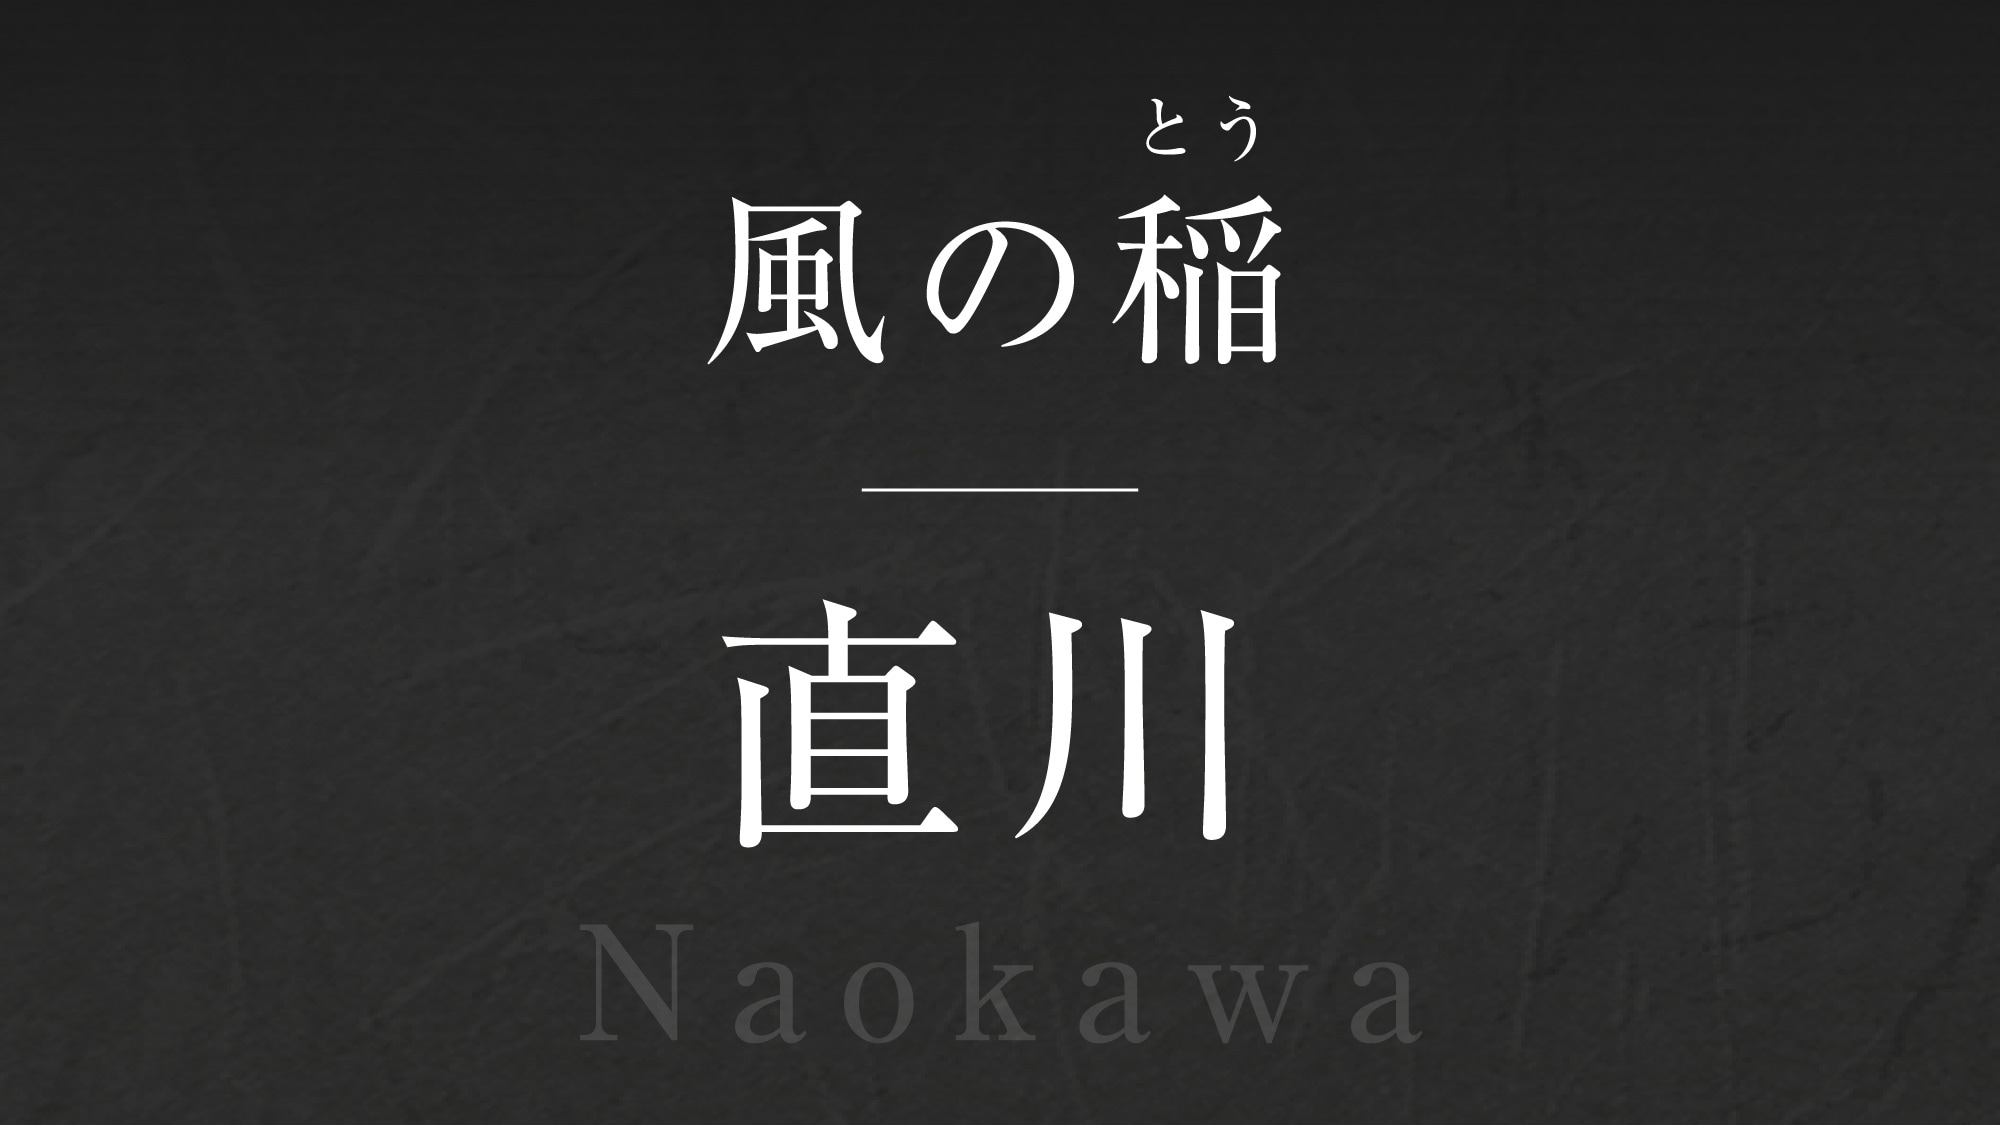 바람의 벼【나오카와】-Naokawa-